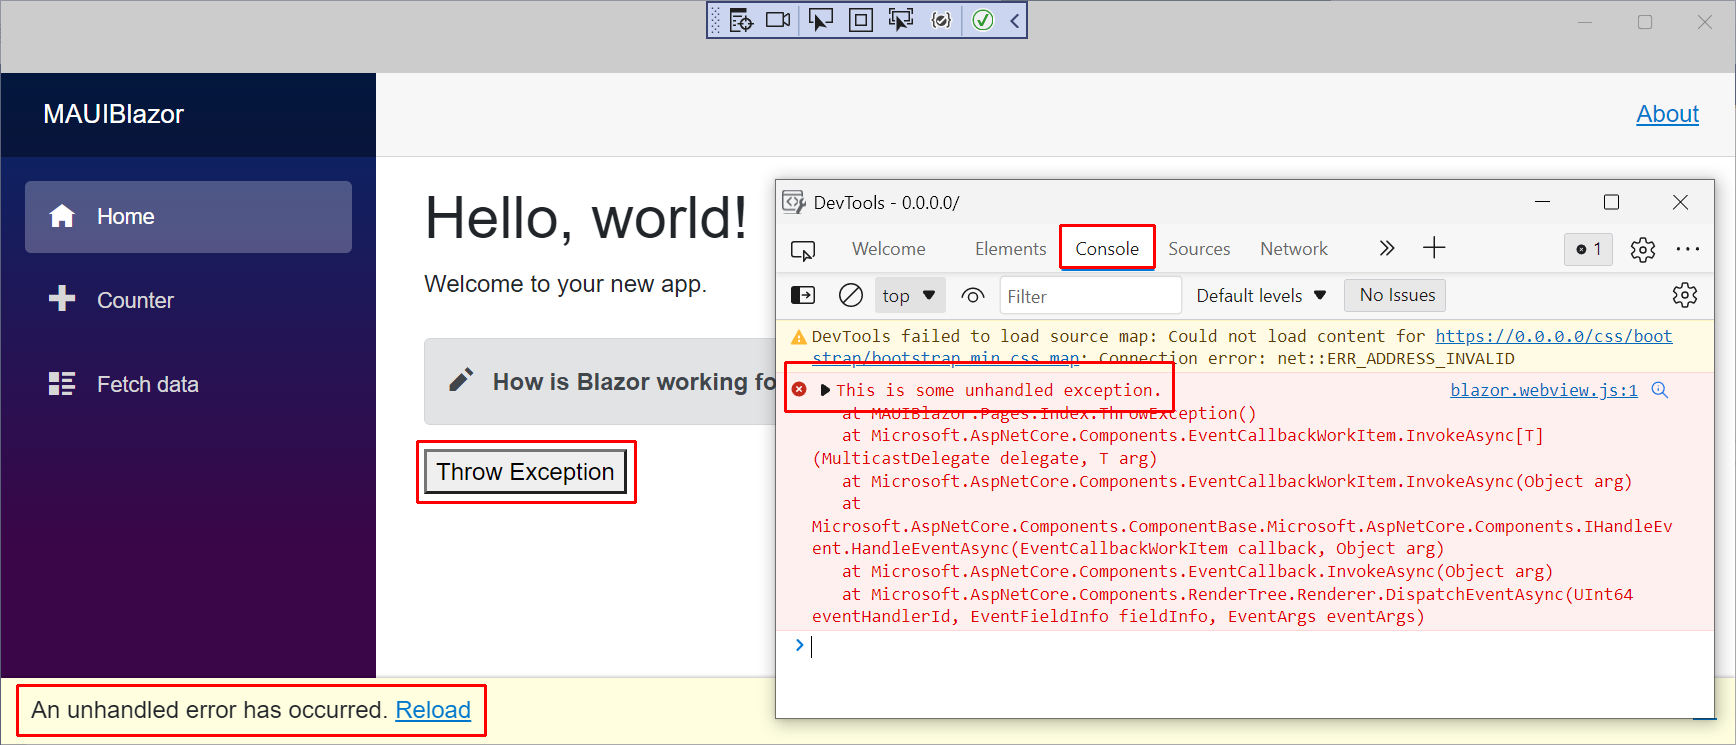 Finestra Microsoft Edge DevTools per un'app Blazor Hybrid in esecuzione in Windows